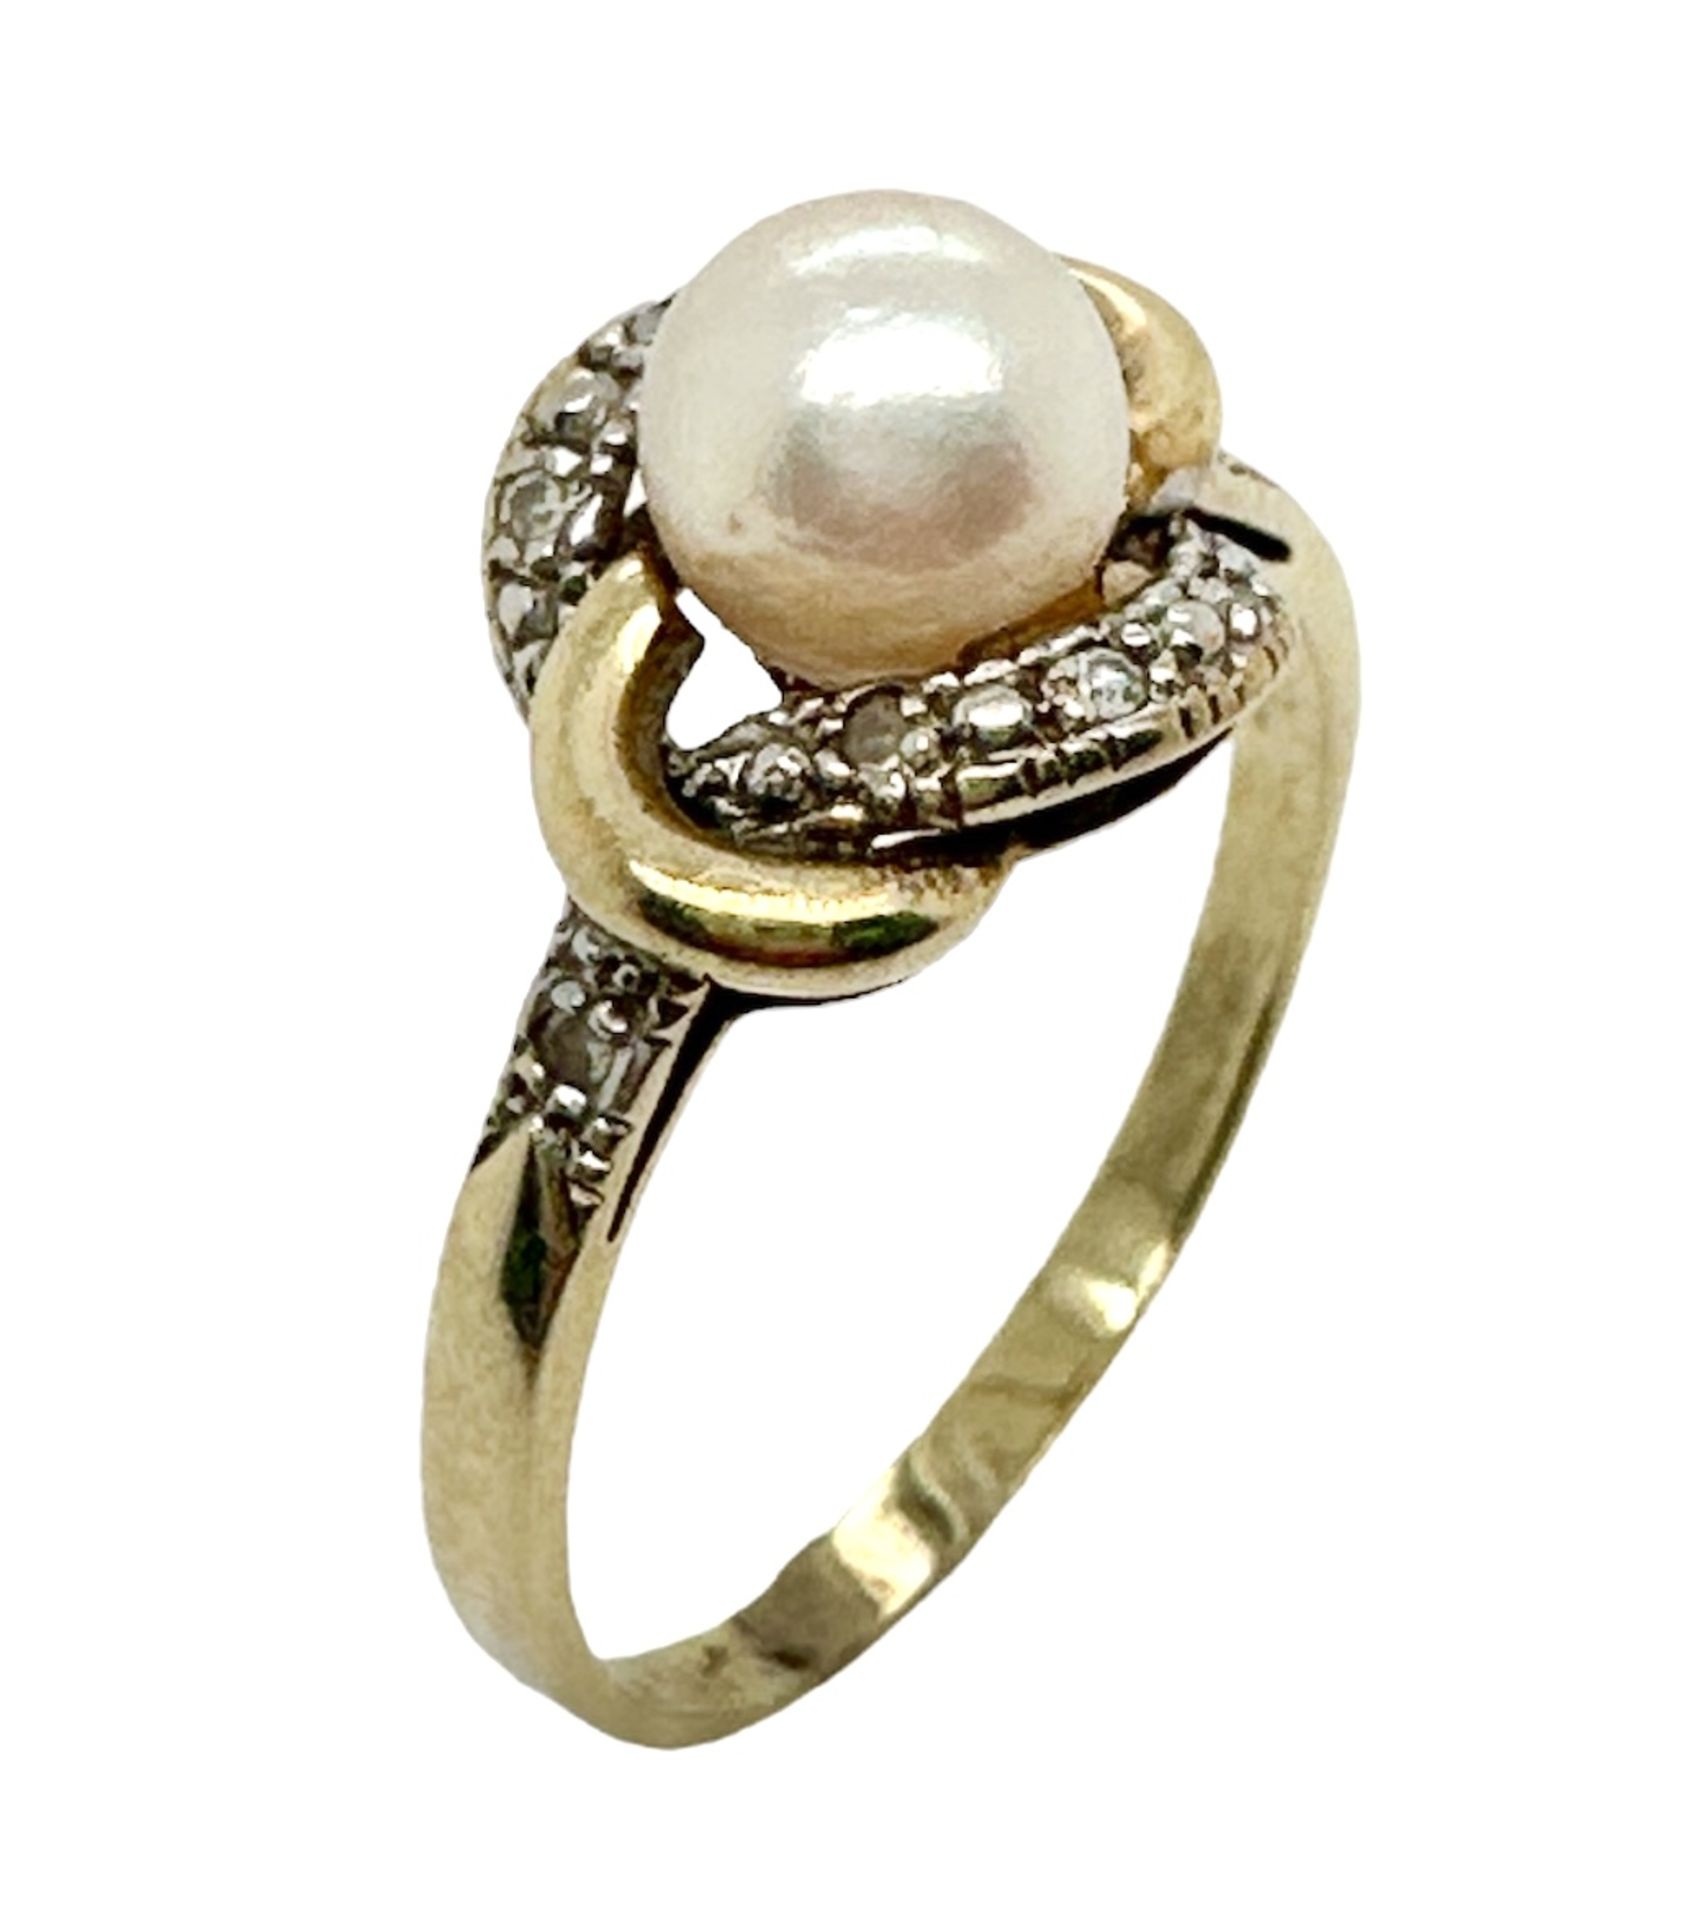 Ring 4,01g 585/- Gelbgold mit 8 Diamanten zus. ca. 0,08 ct. und Perle, Ringgröße ca. 62